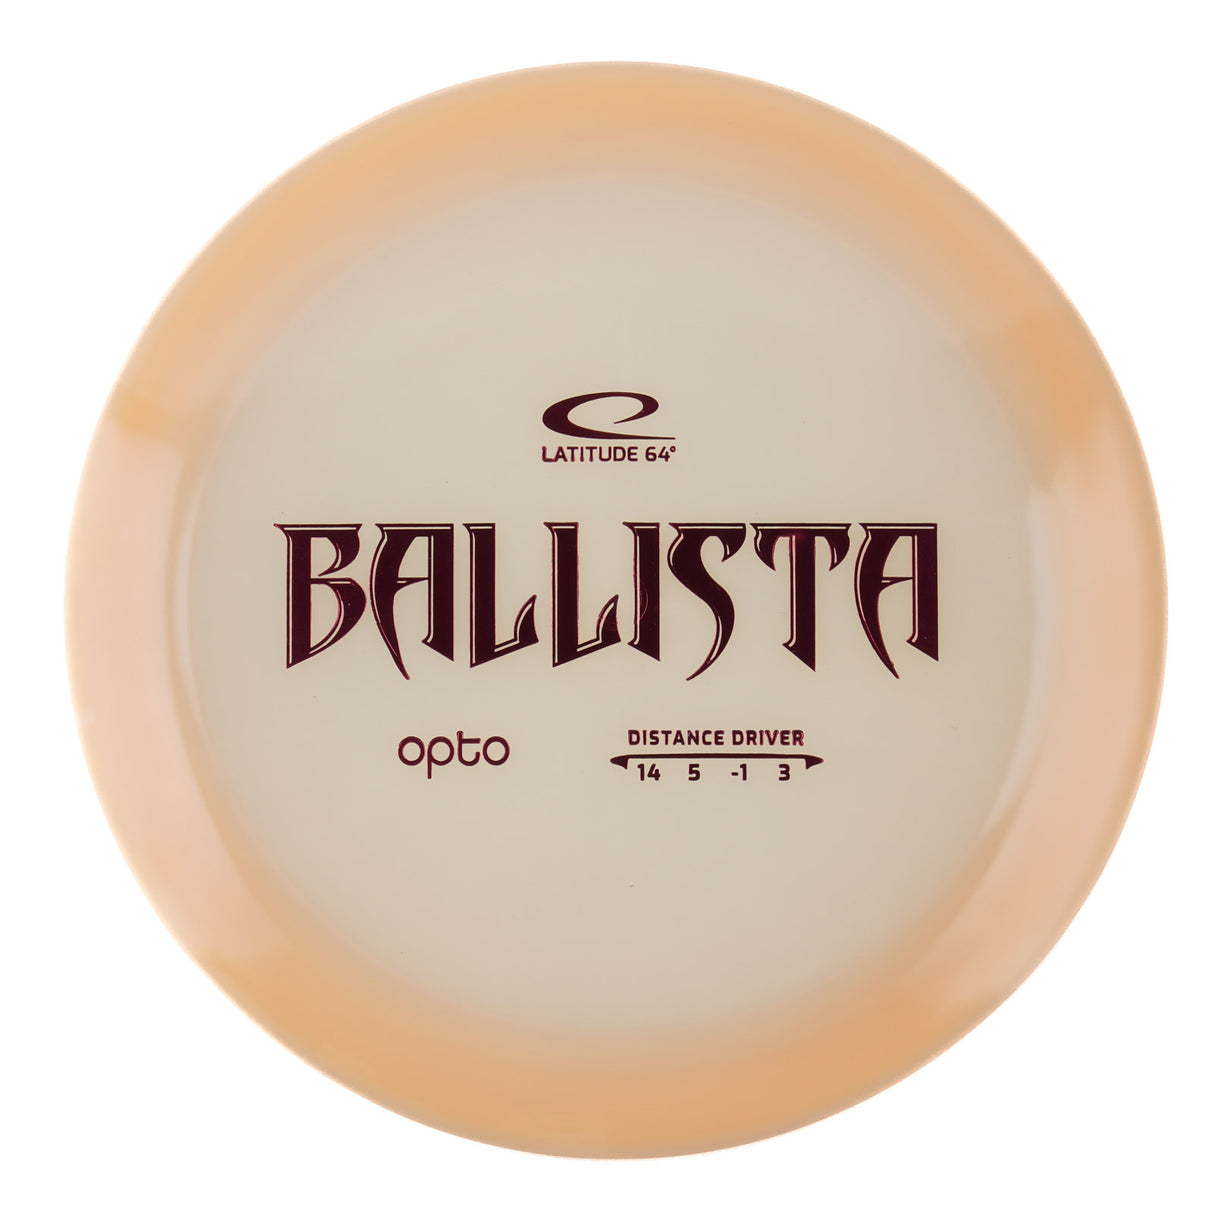 Latitude 64 Ballista - Opto 174g | Style 0001